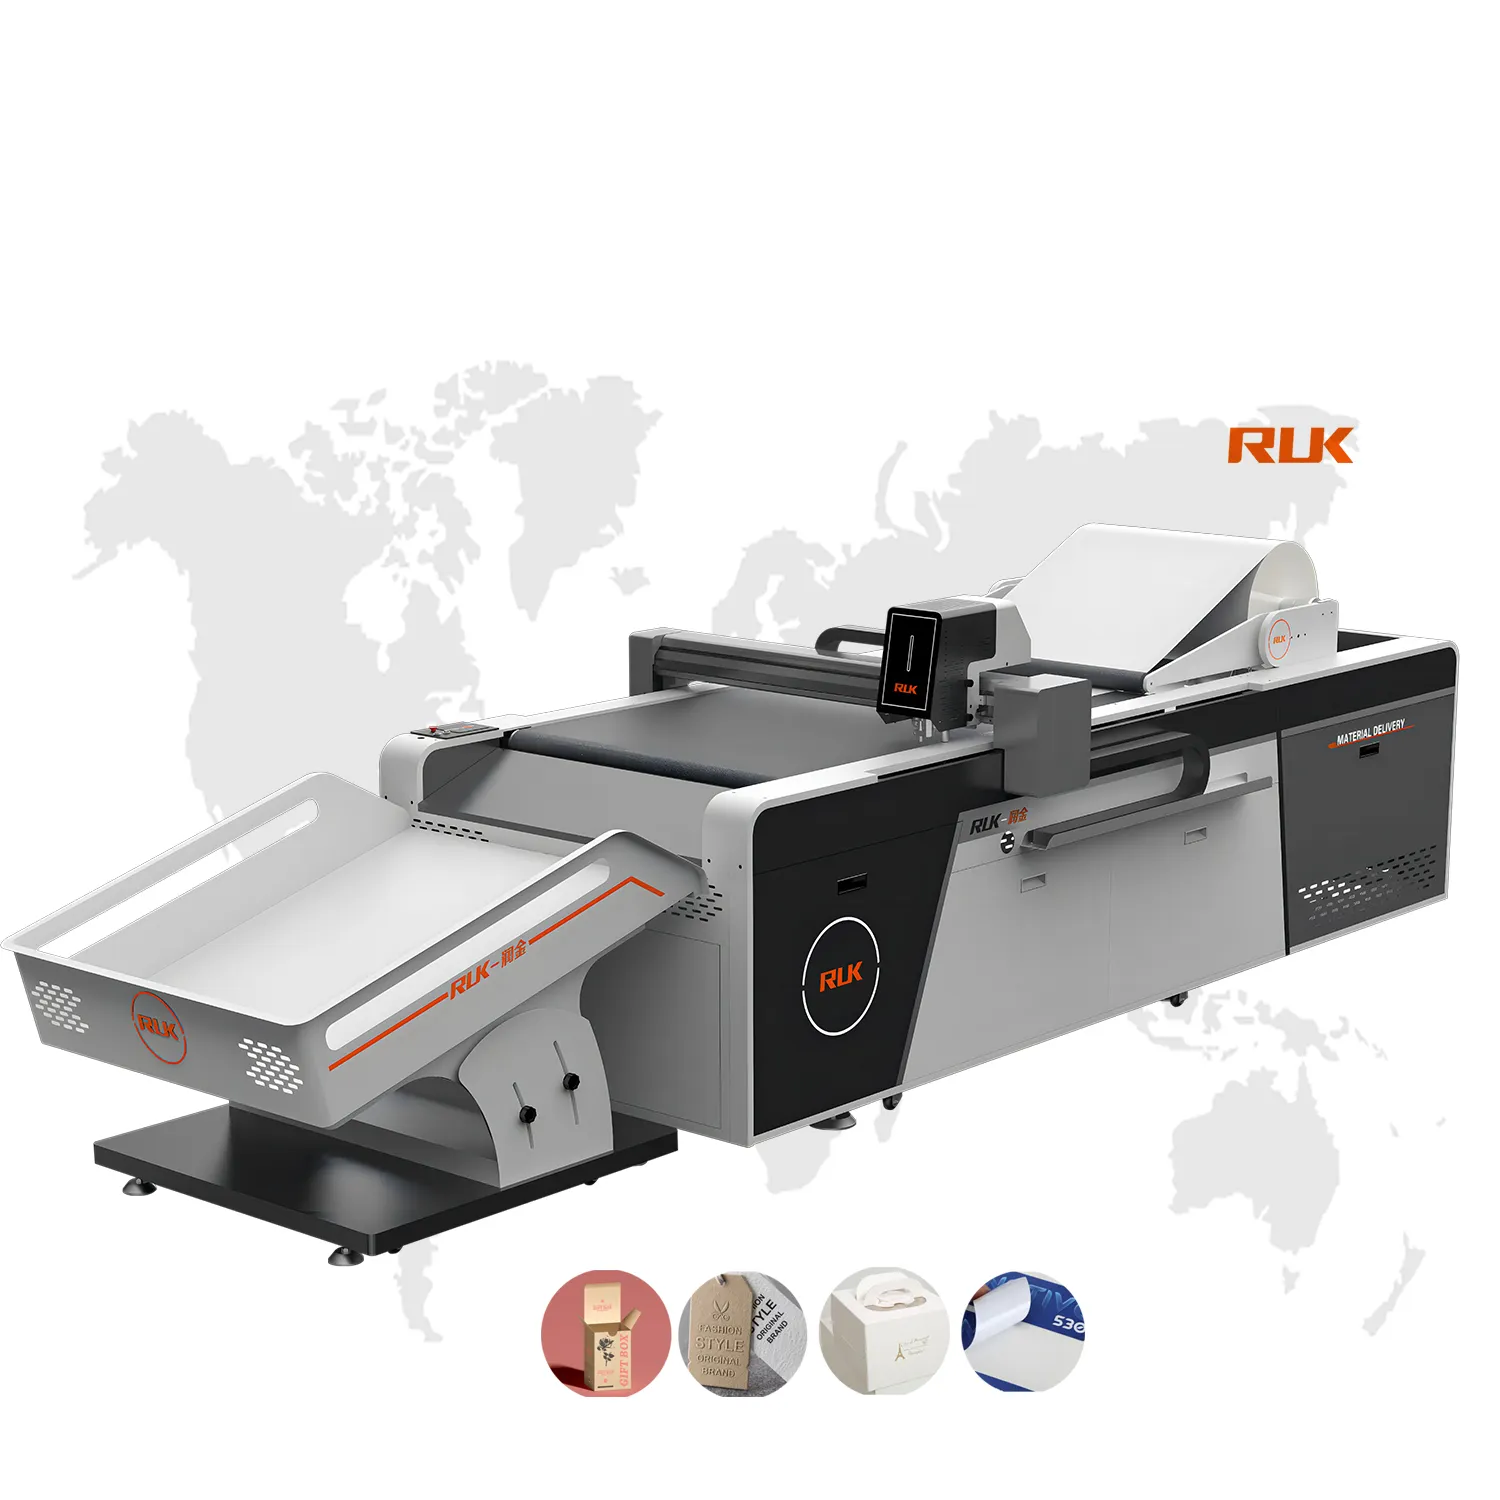 Rok MKC mesin pemotong Digital dengan perekat, mesin pemotong kerajinan, mesin pemotong mati karton otomatis